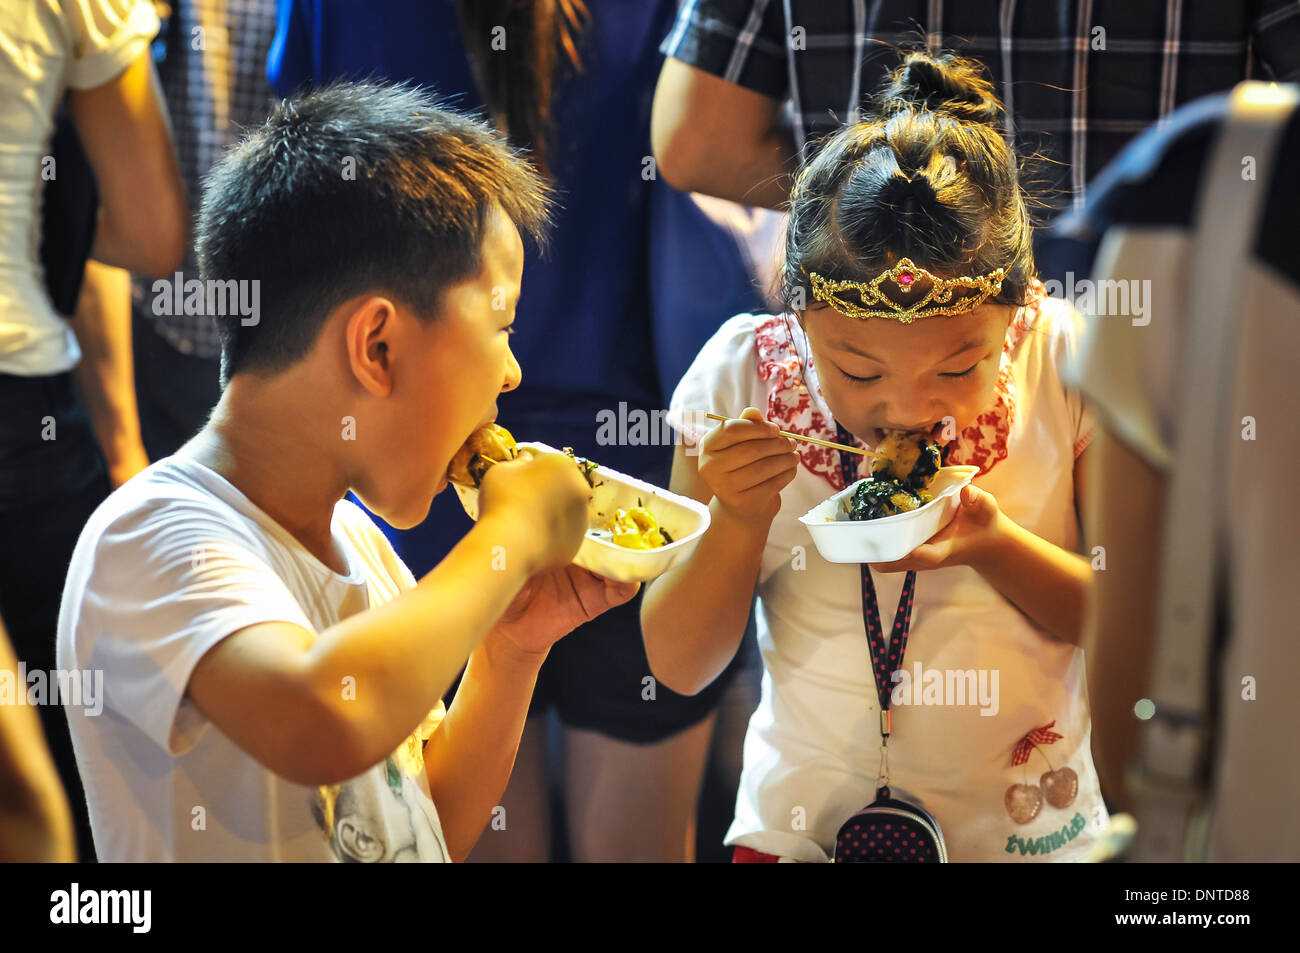 Los niños comiendo comida callejera, Hong Kong Foto de stock